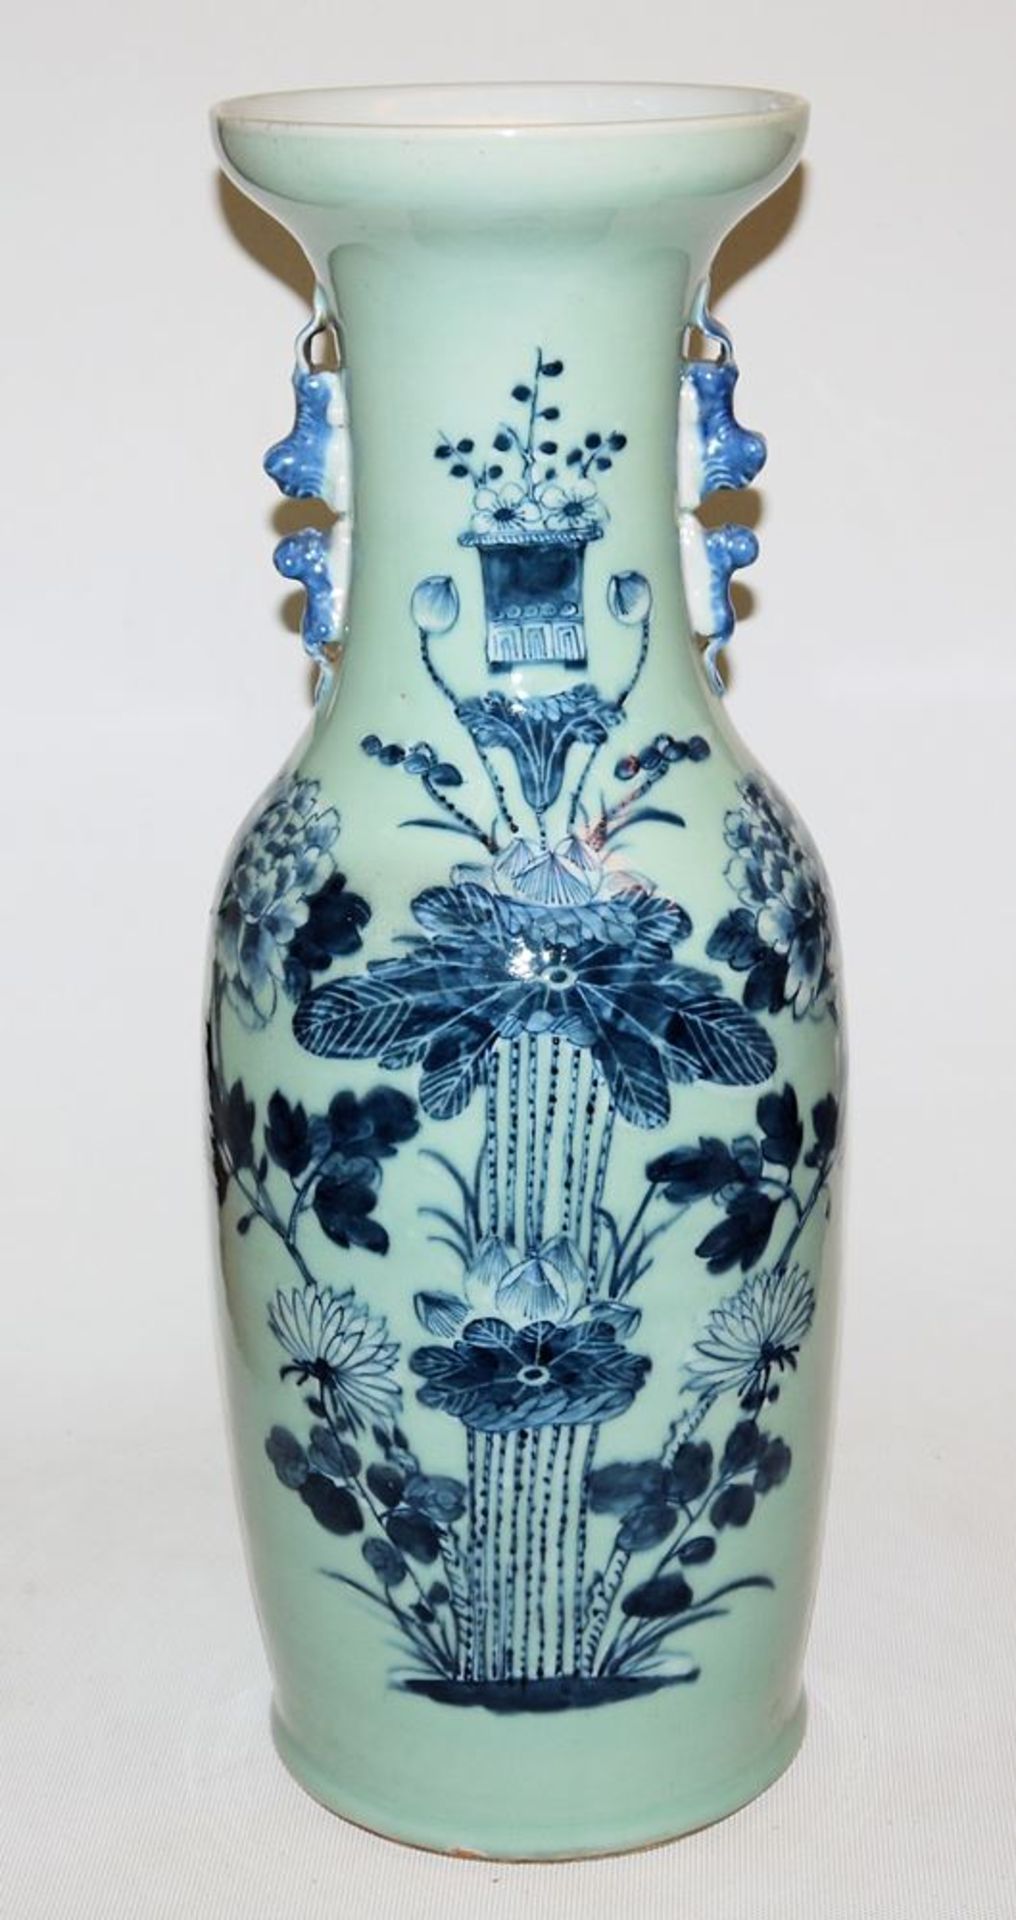 Große Blauweiß-Seladonvase, späte Qing/Republik-Zeit, China um 1900